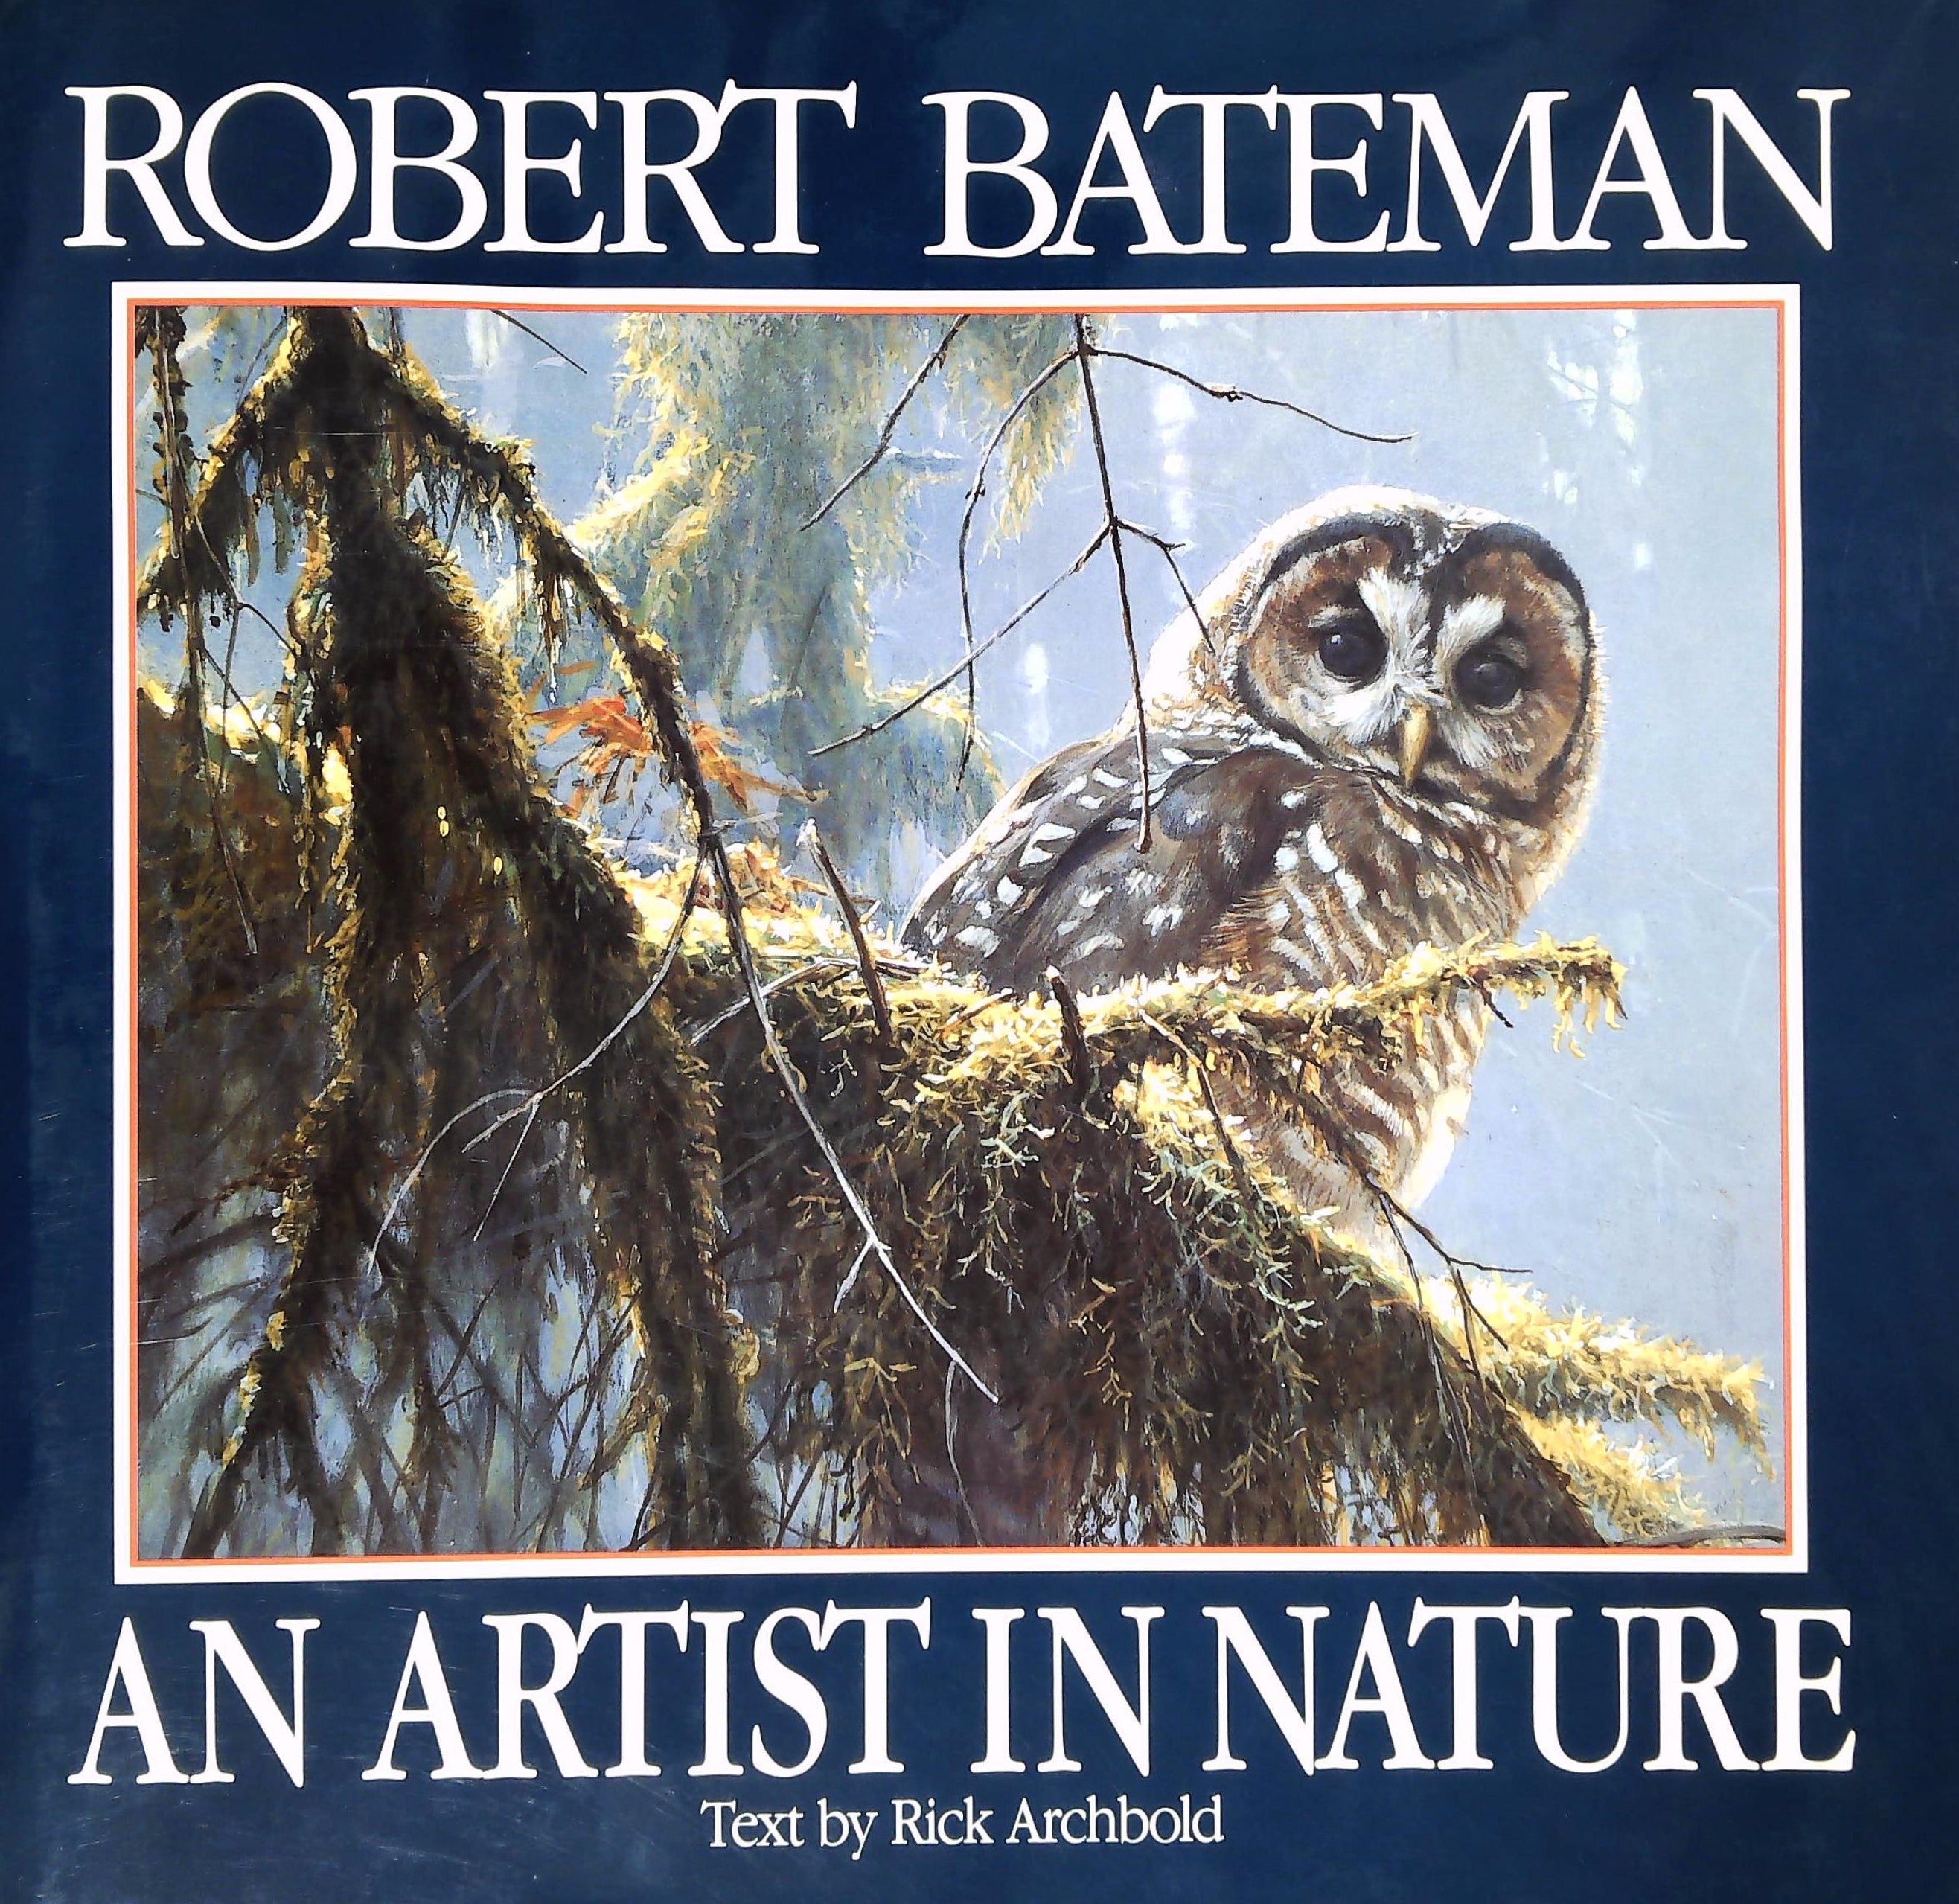 Livre ISBN 0670834262 An artist in nature (Robert Bateman)